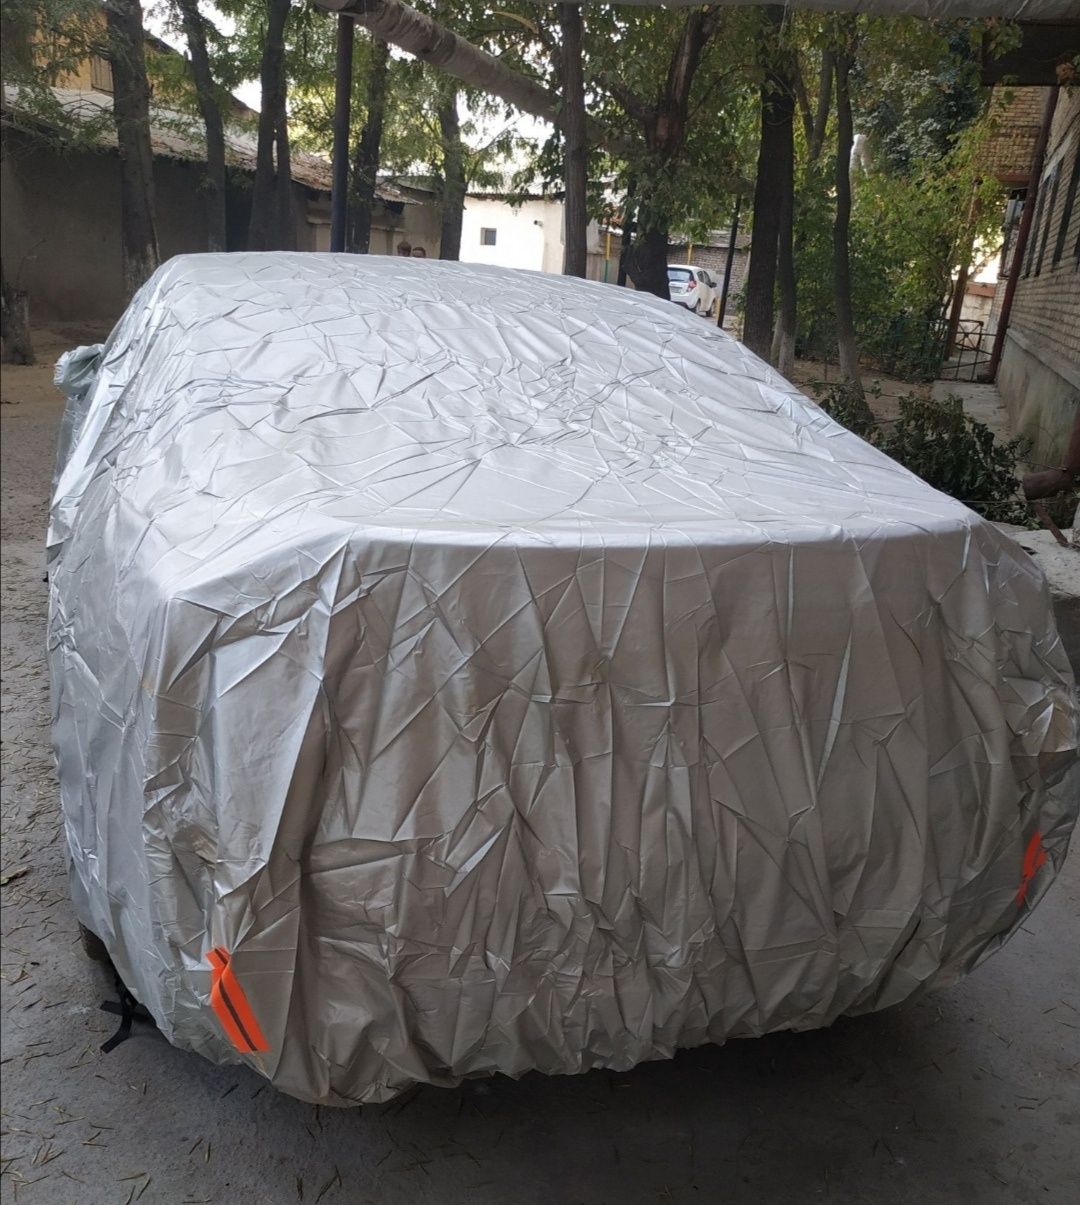 Avto tent yuqori sifat Export Maxsulot Arzoniga aldanmang Samarqand